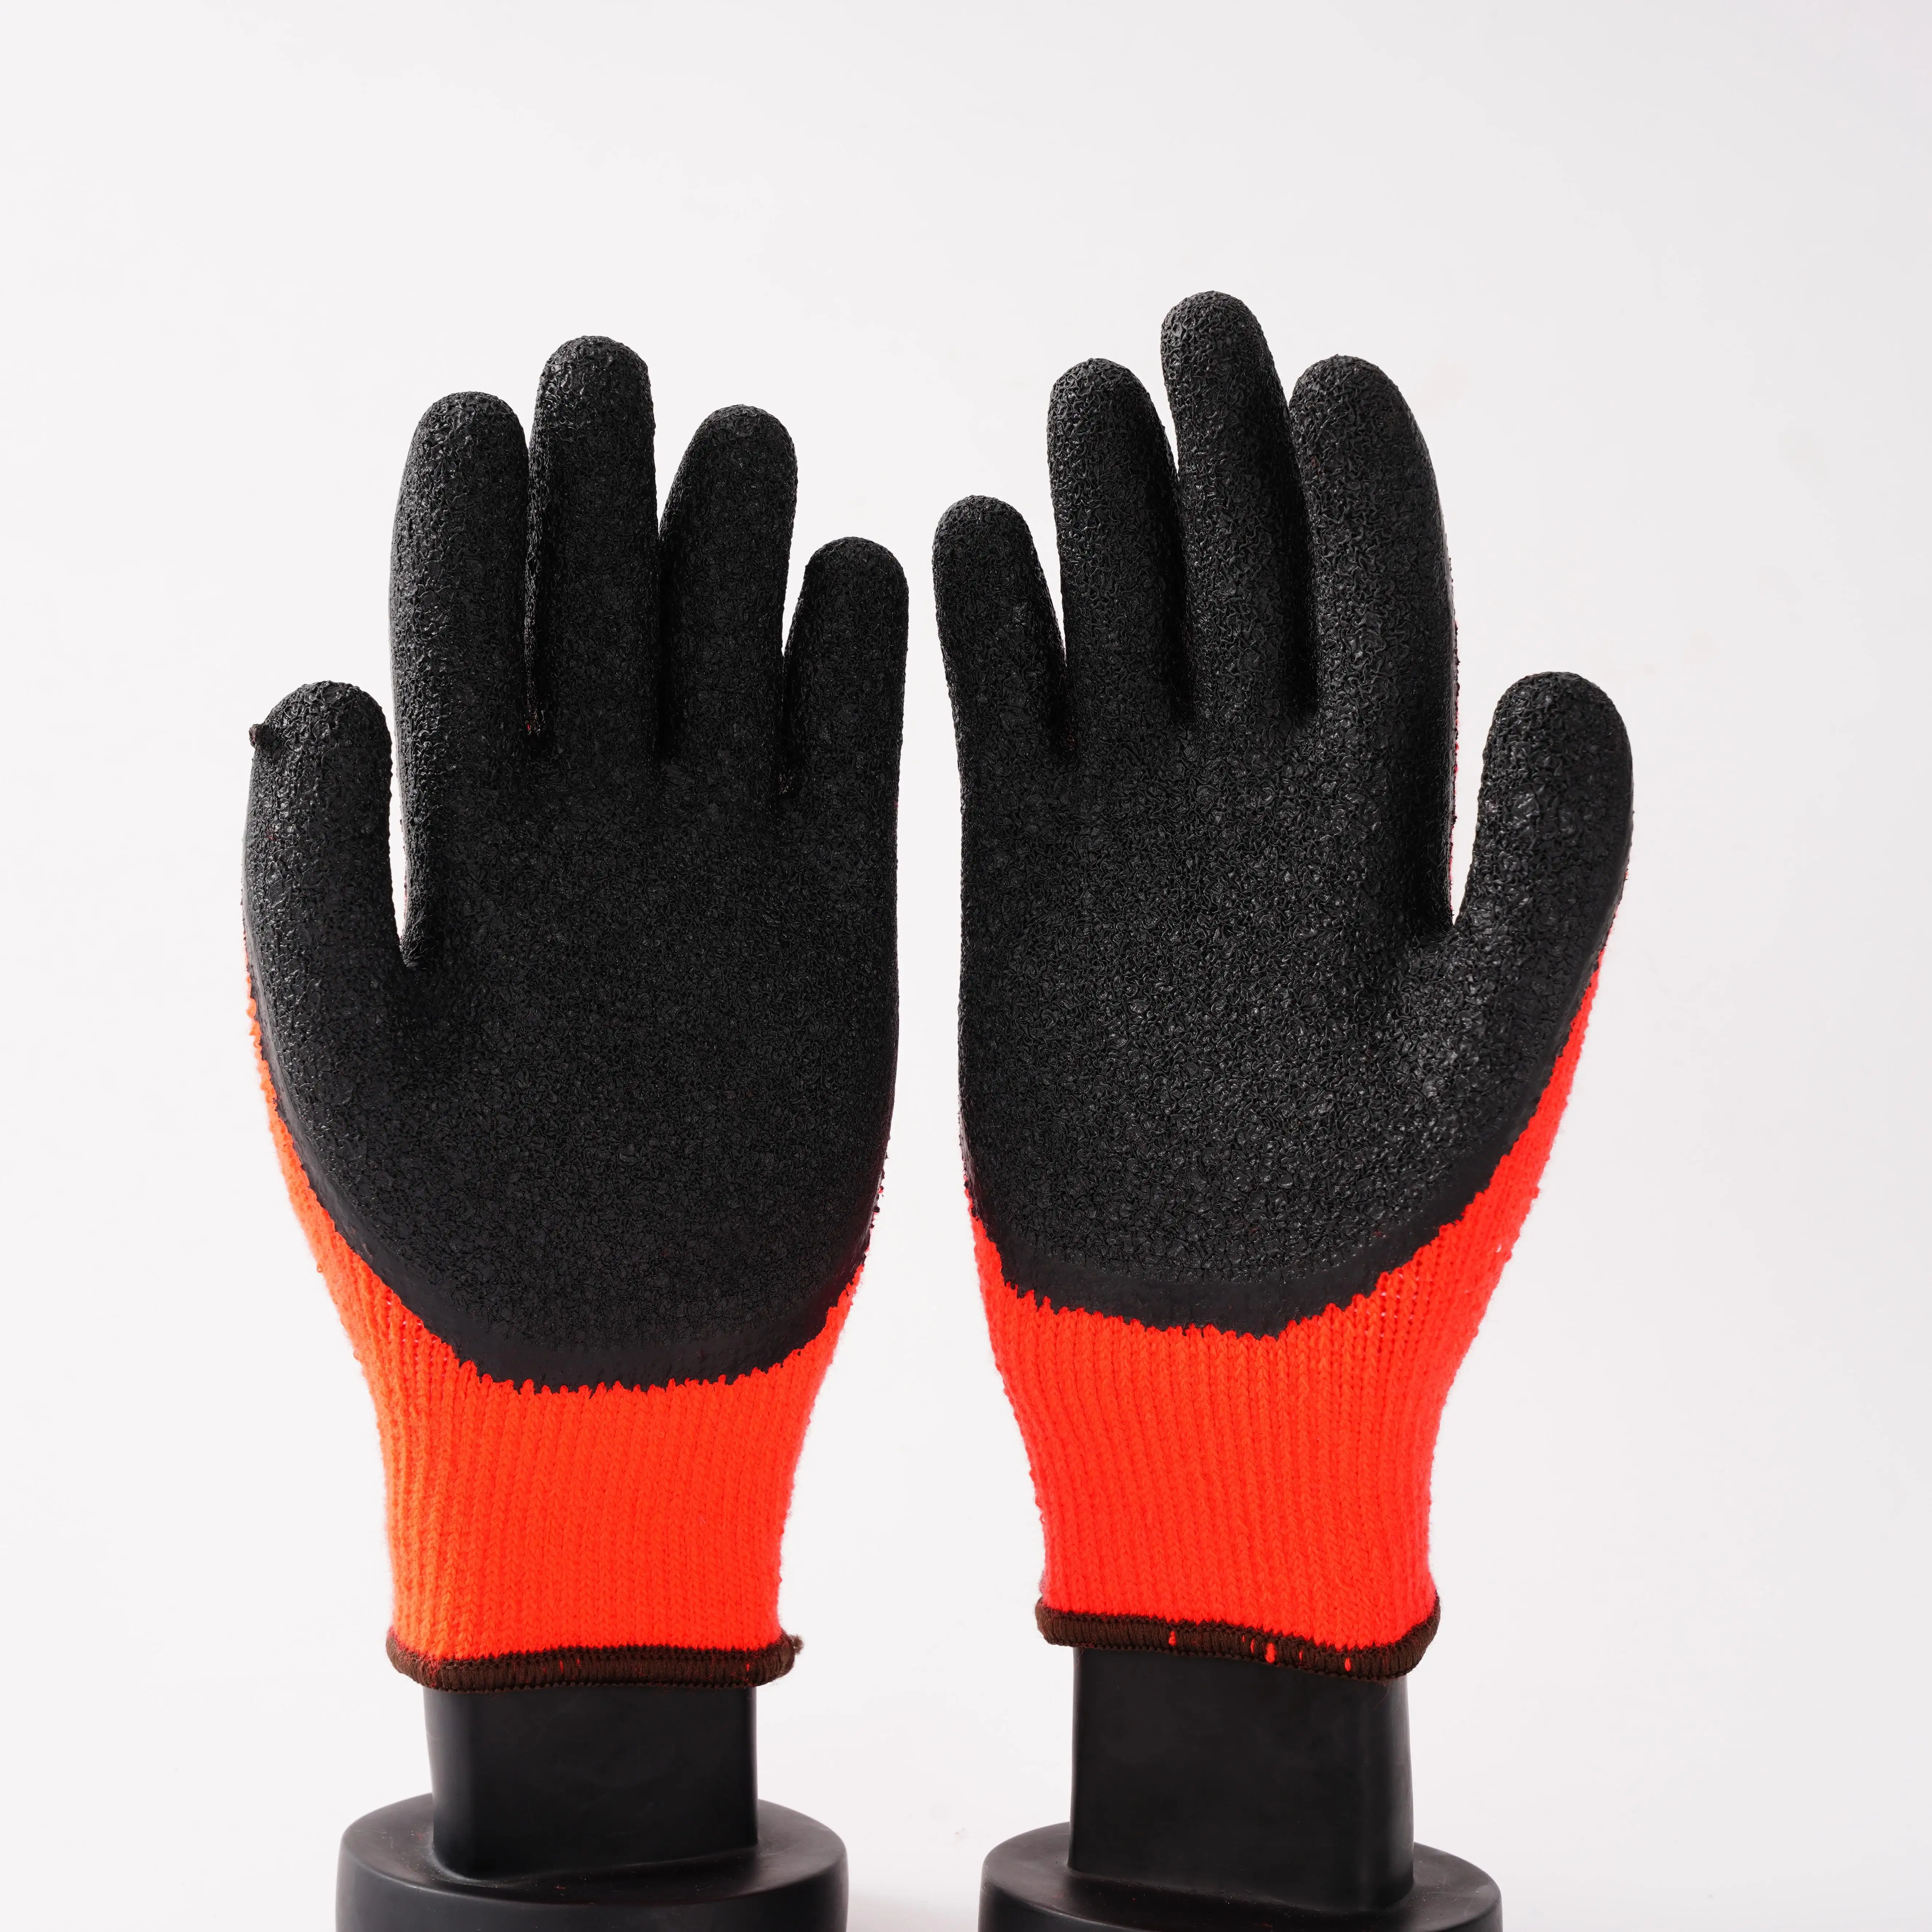 latex nitrile coated work gloves black polyester liner, black latex coated gloves Latex wrinkle gloves